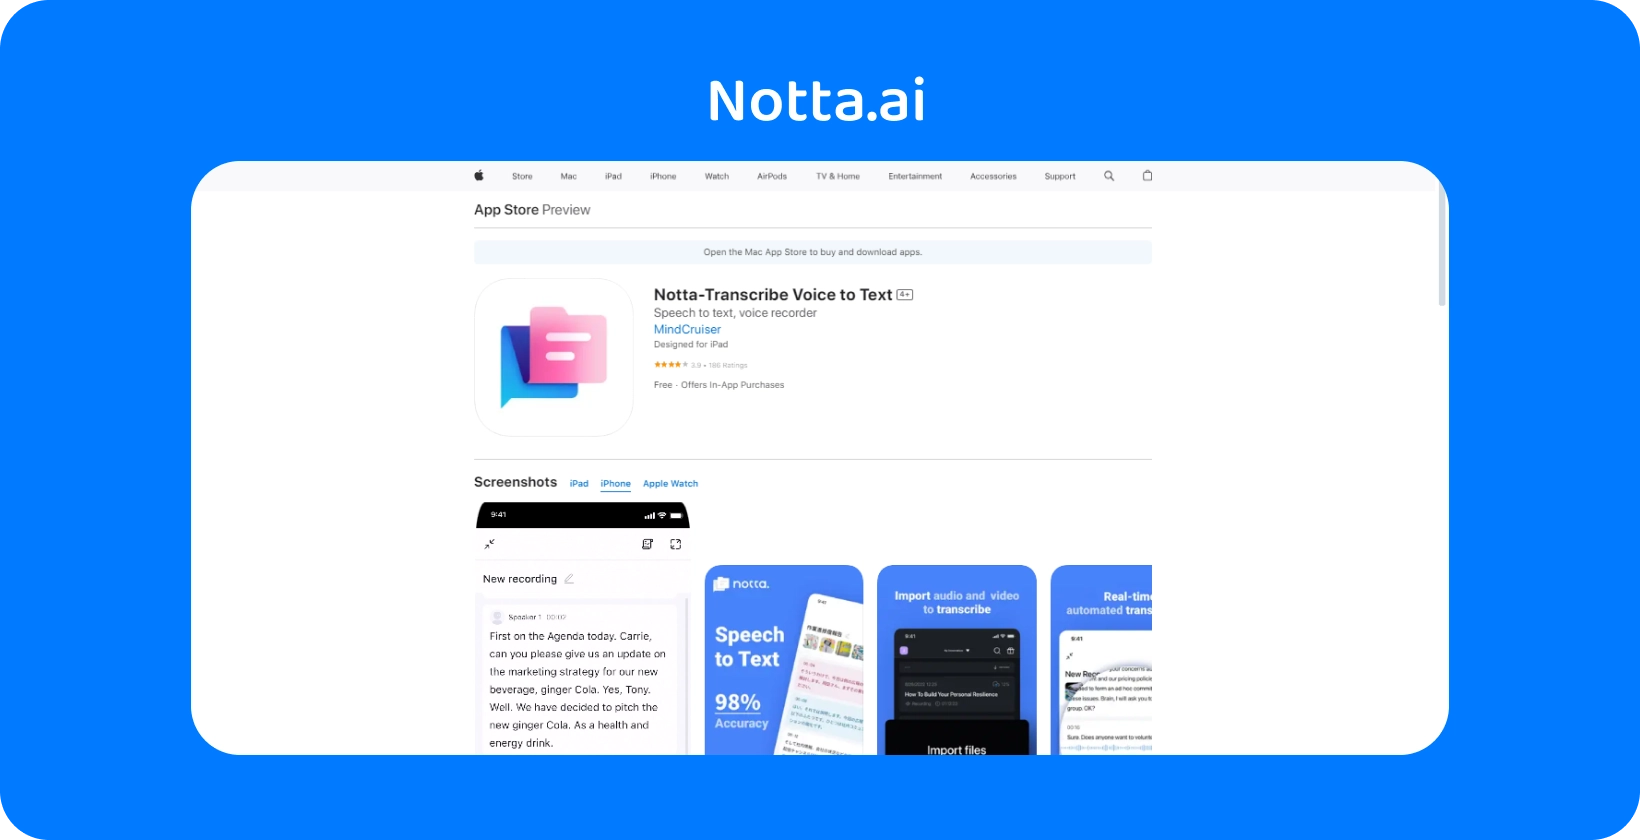 Nota.ai App Store náhled s novými funkcemi pro převod hlasu na text s AI přesností.